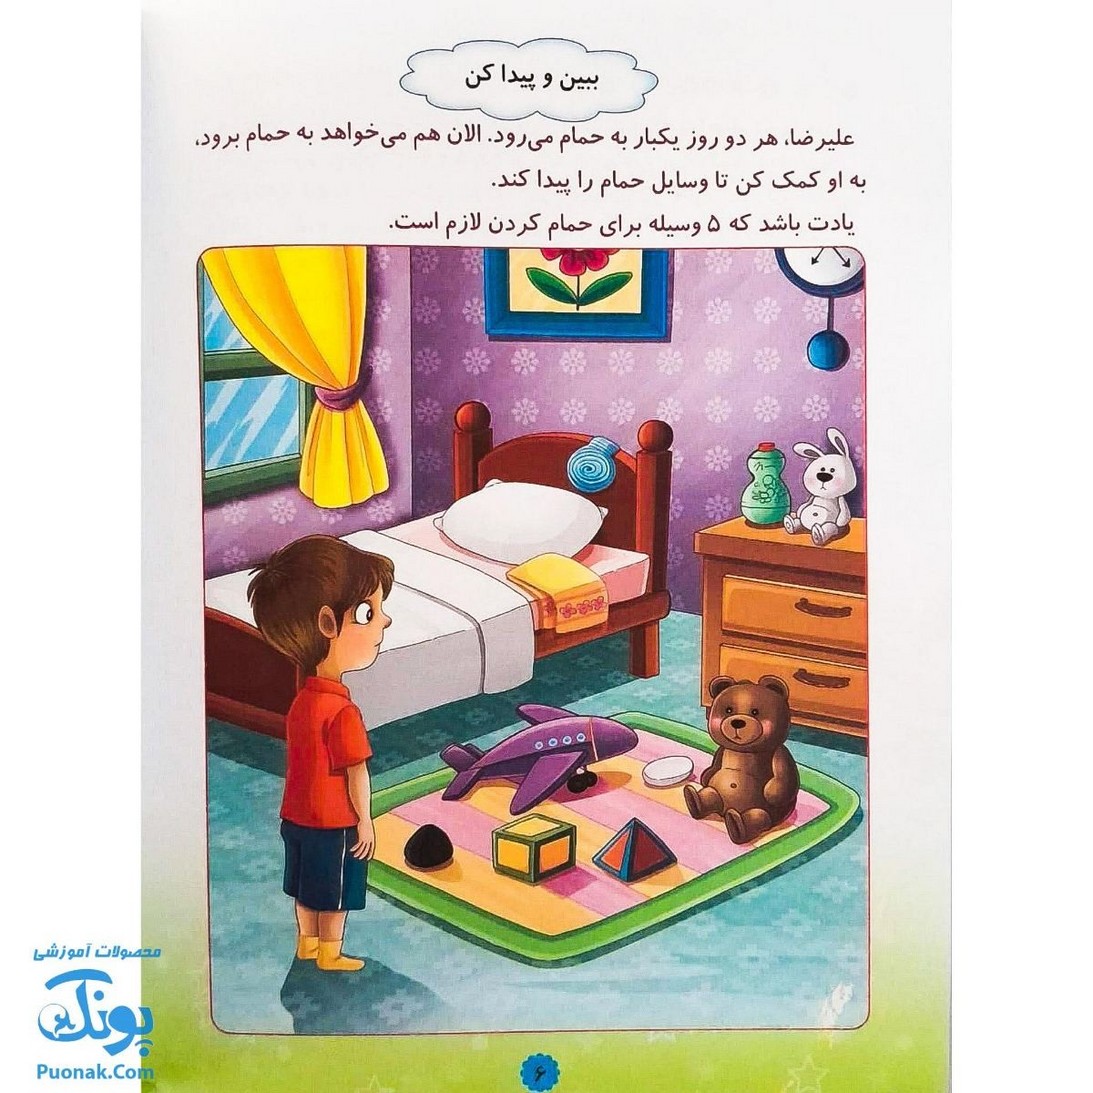 کتاب آموزشی قرآن دوست بچه ها ۲ (مجموعه بسته آموزشی گلستان)